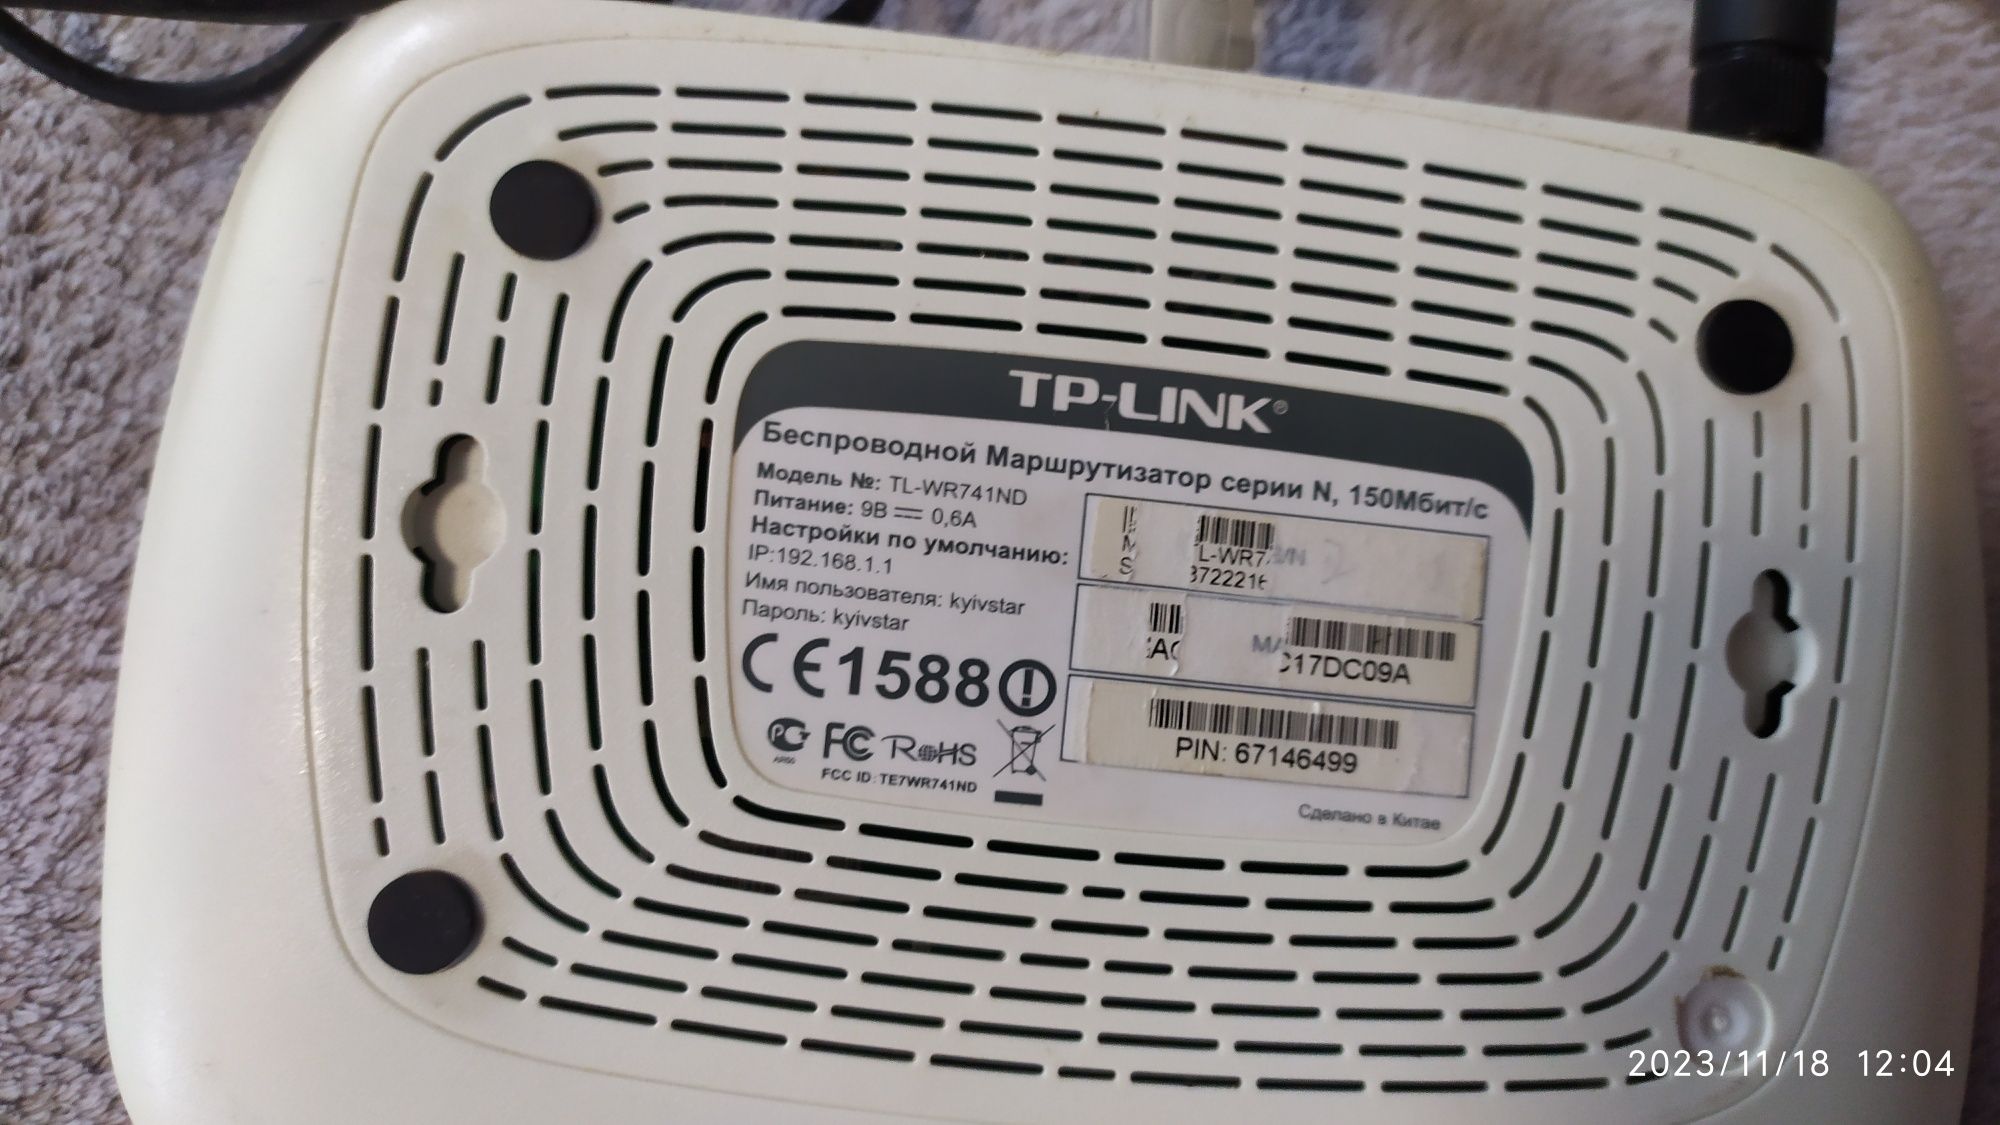 Продам Wi-Fi роутер  ТP- LINK от Киевстар